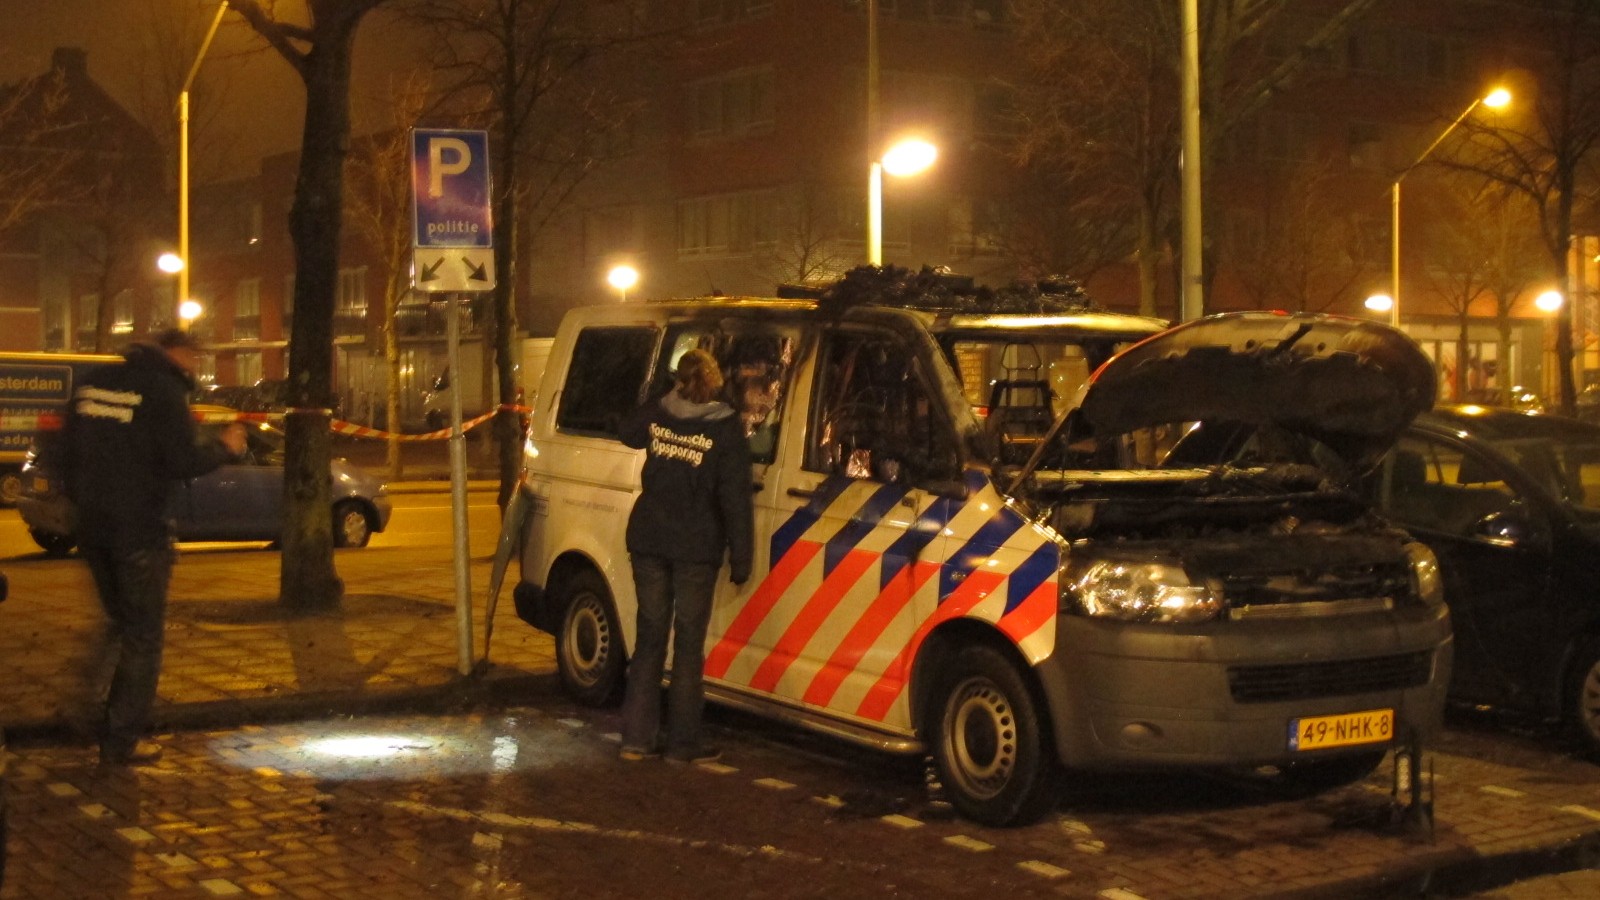 Een politiebusje is hedennacht helemaal uitgebrand op de parkeerplaats voor het politiebureau August Allebeplein perceel 179 in Amsterdam West. Hoe de brand kon ontstaan is nog onduidelijk maar vermoedelijk is hier sprake van brandstichting. Een taxichauf